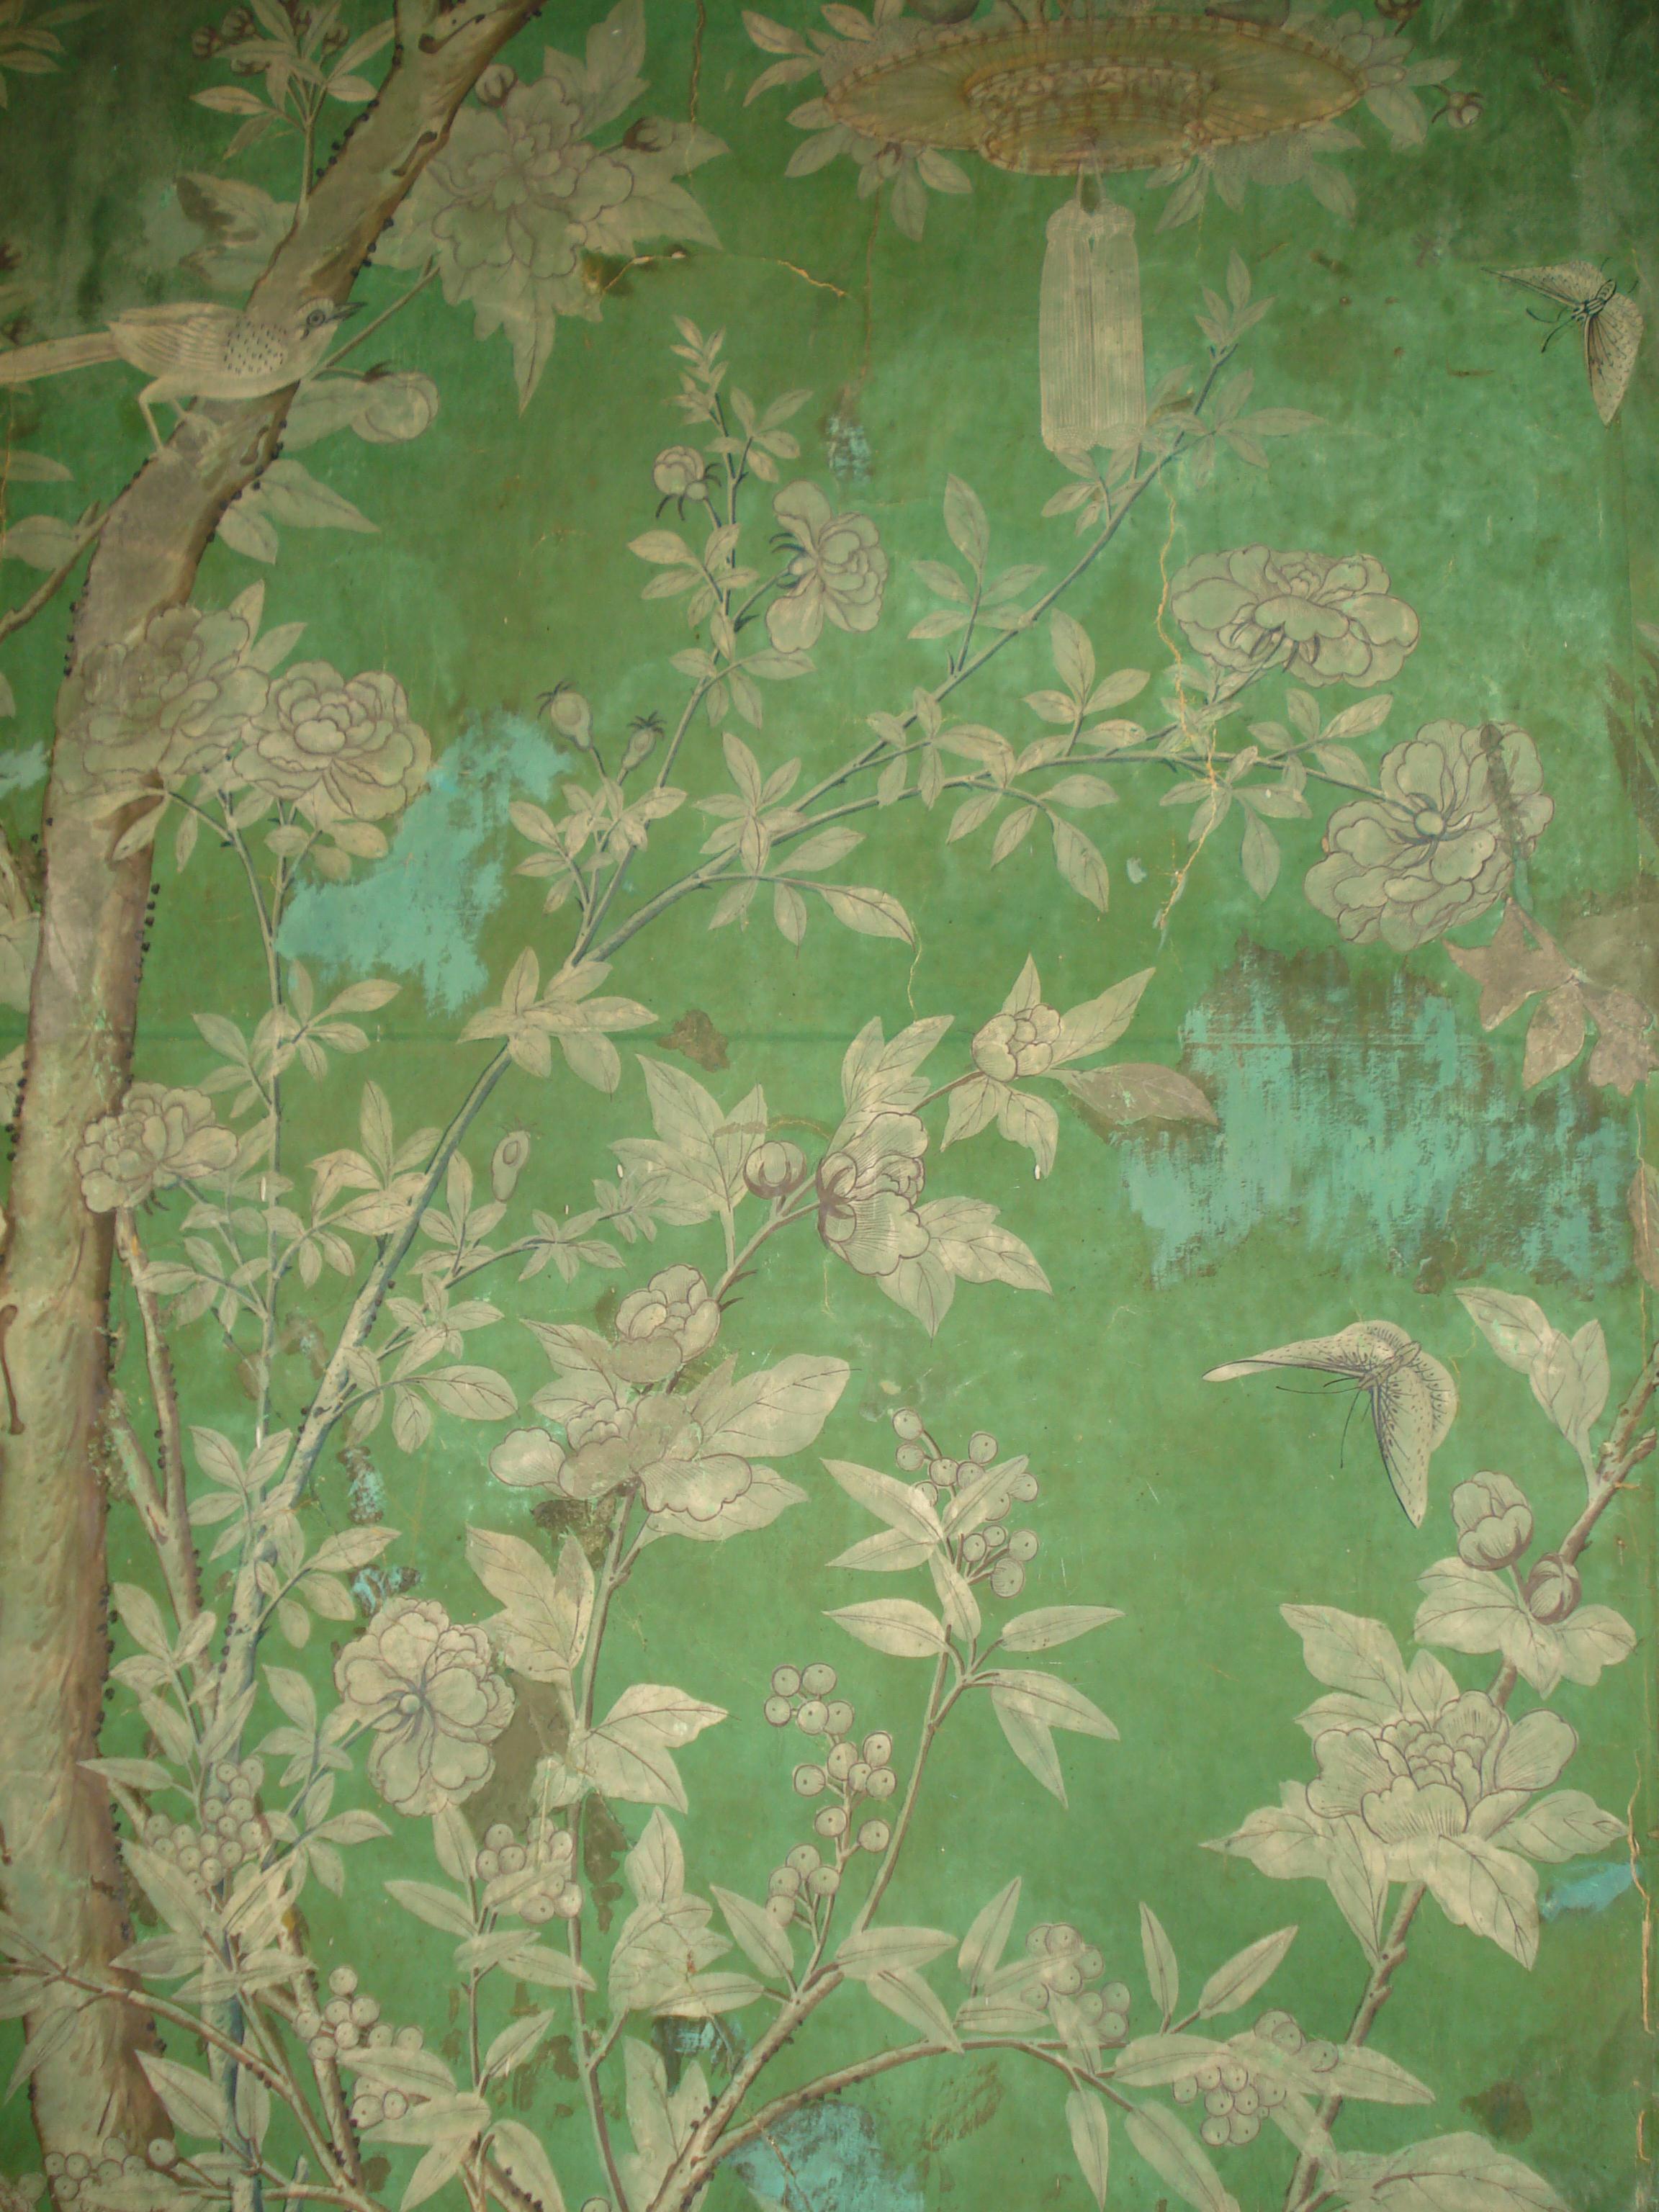 A room full of birds : Eighteenth Century Wallpaper | The Bentley Blog